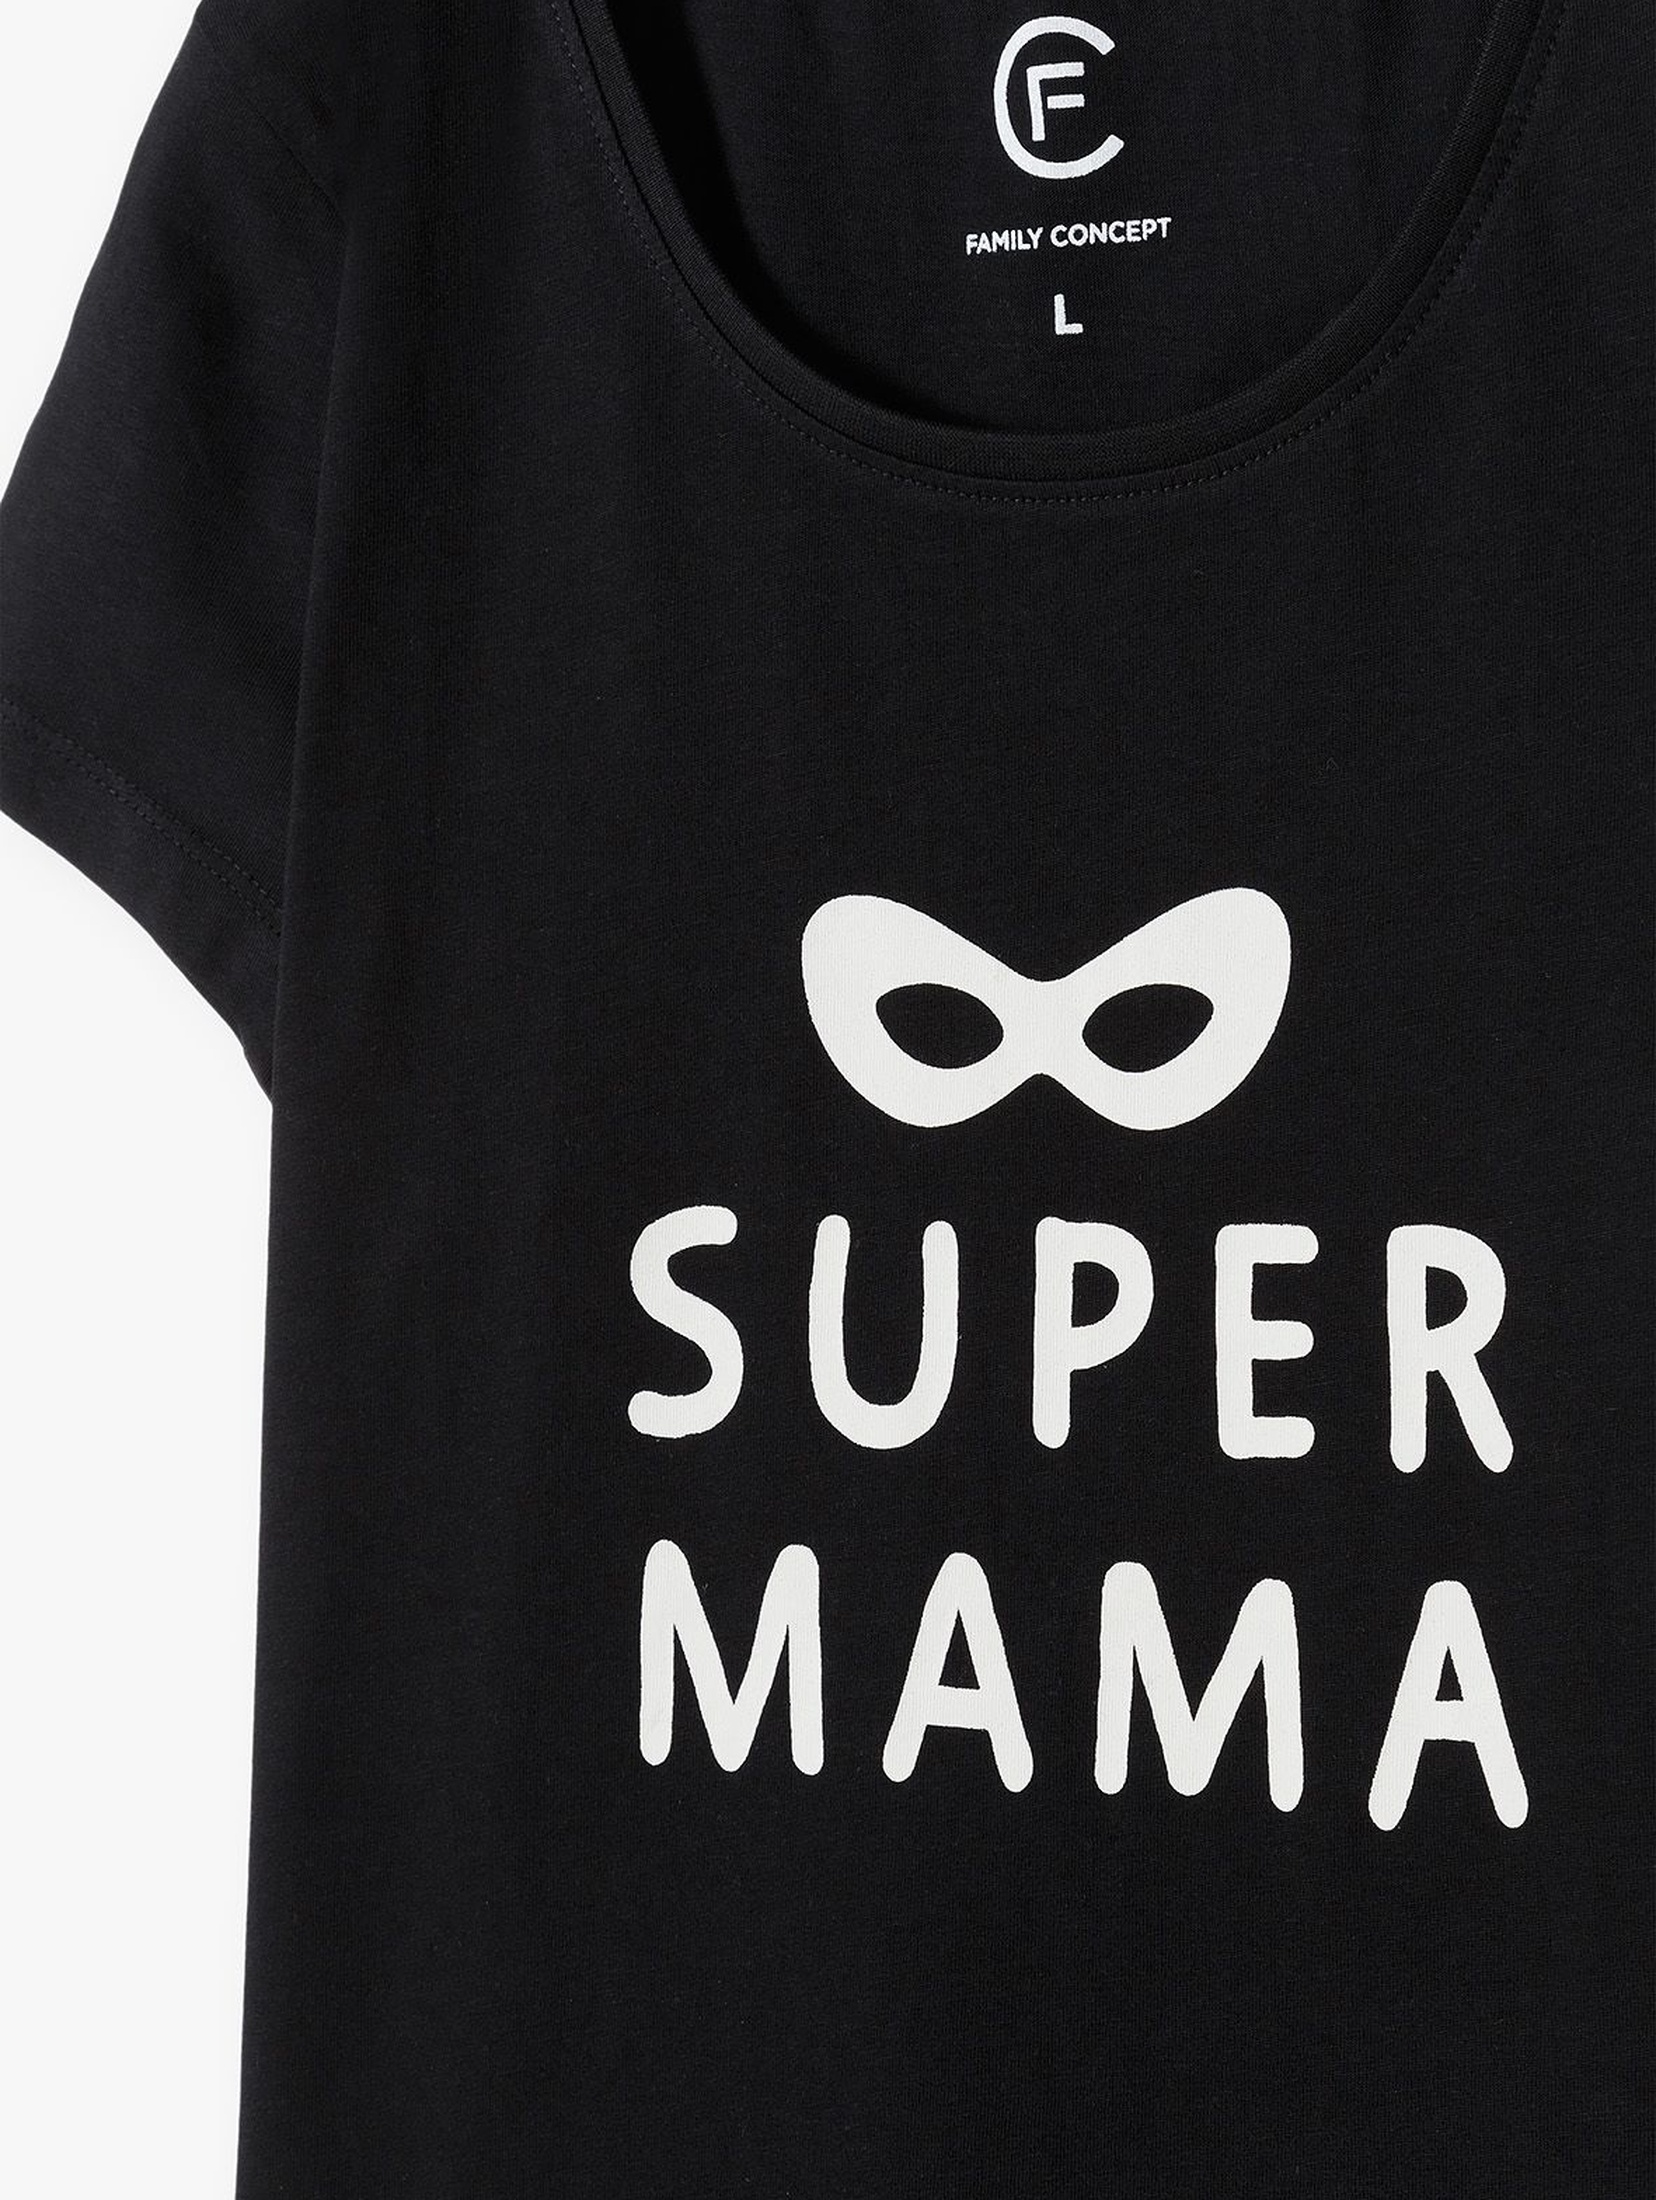 Bawełniany tshirt damski z napisem "Super mama"